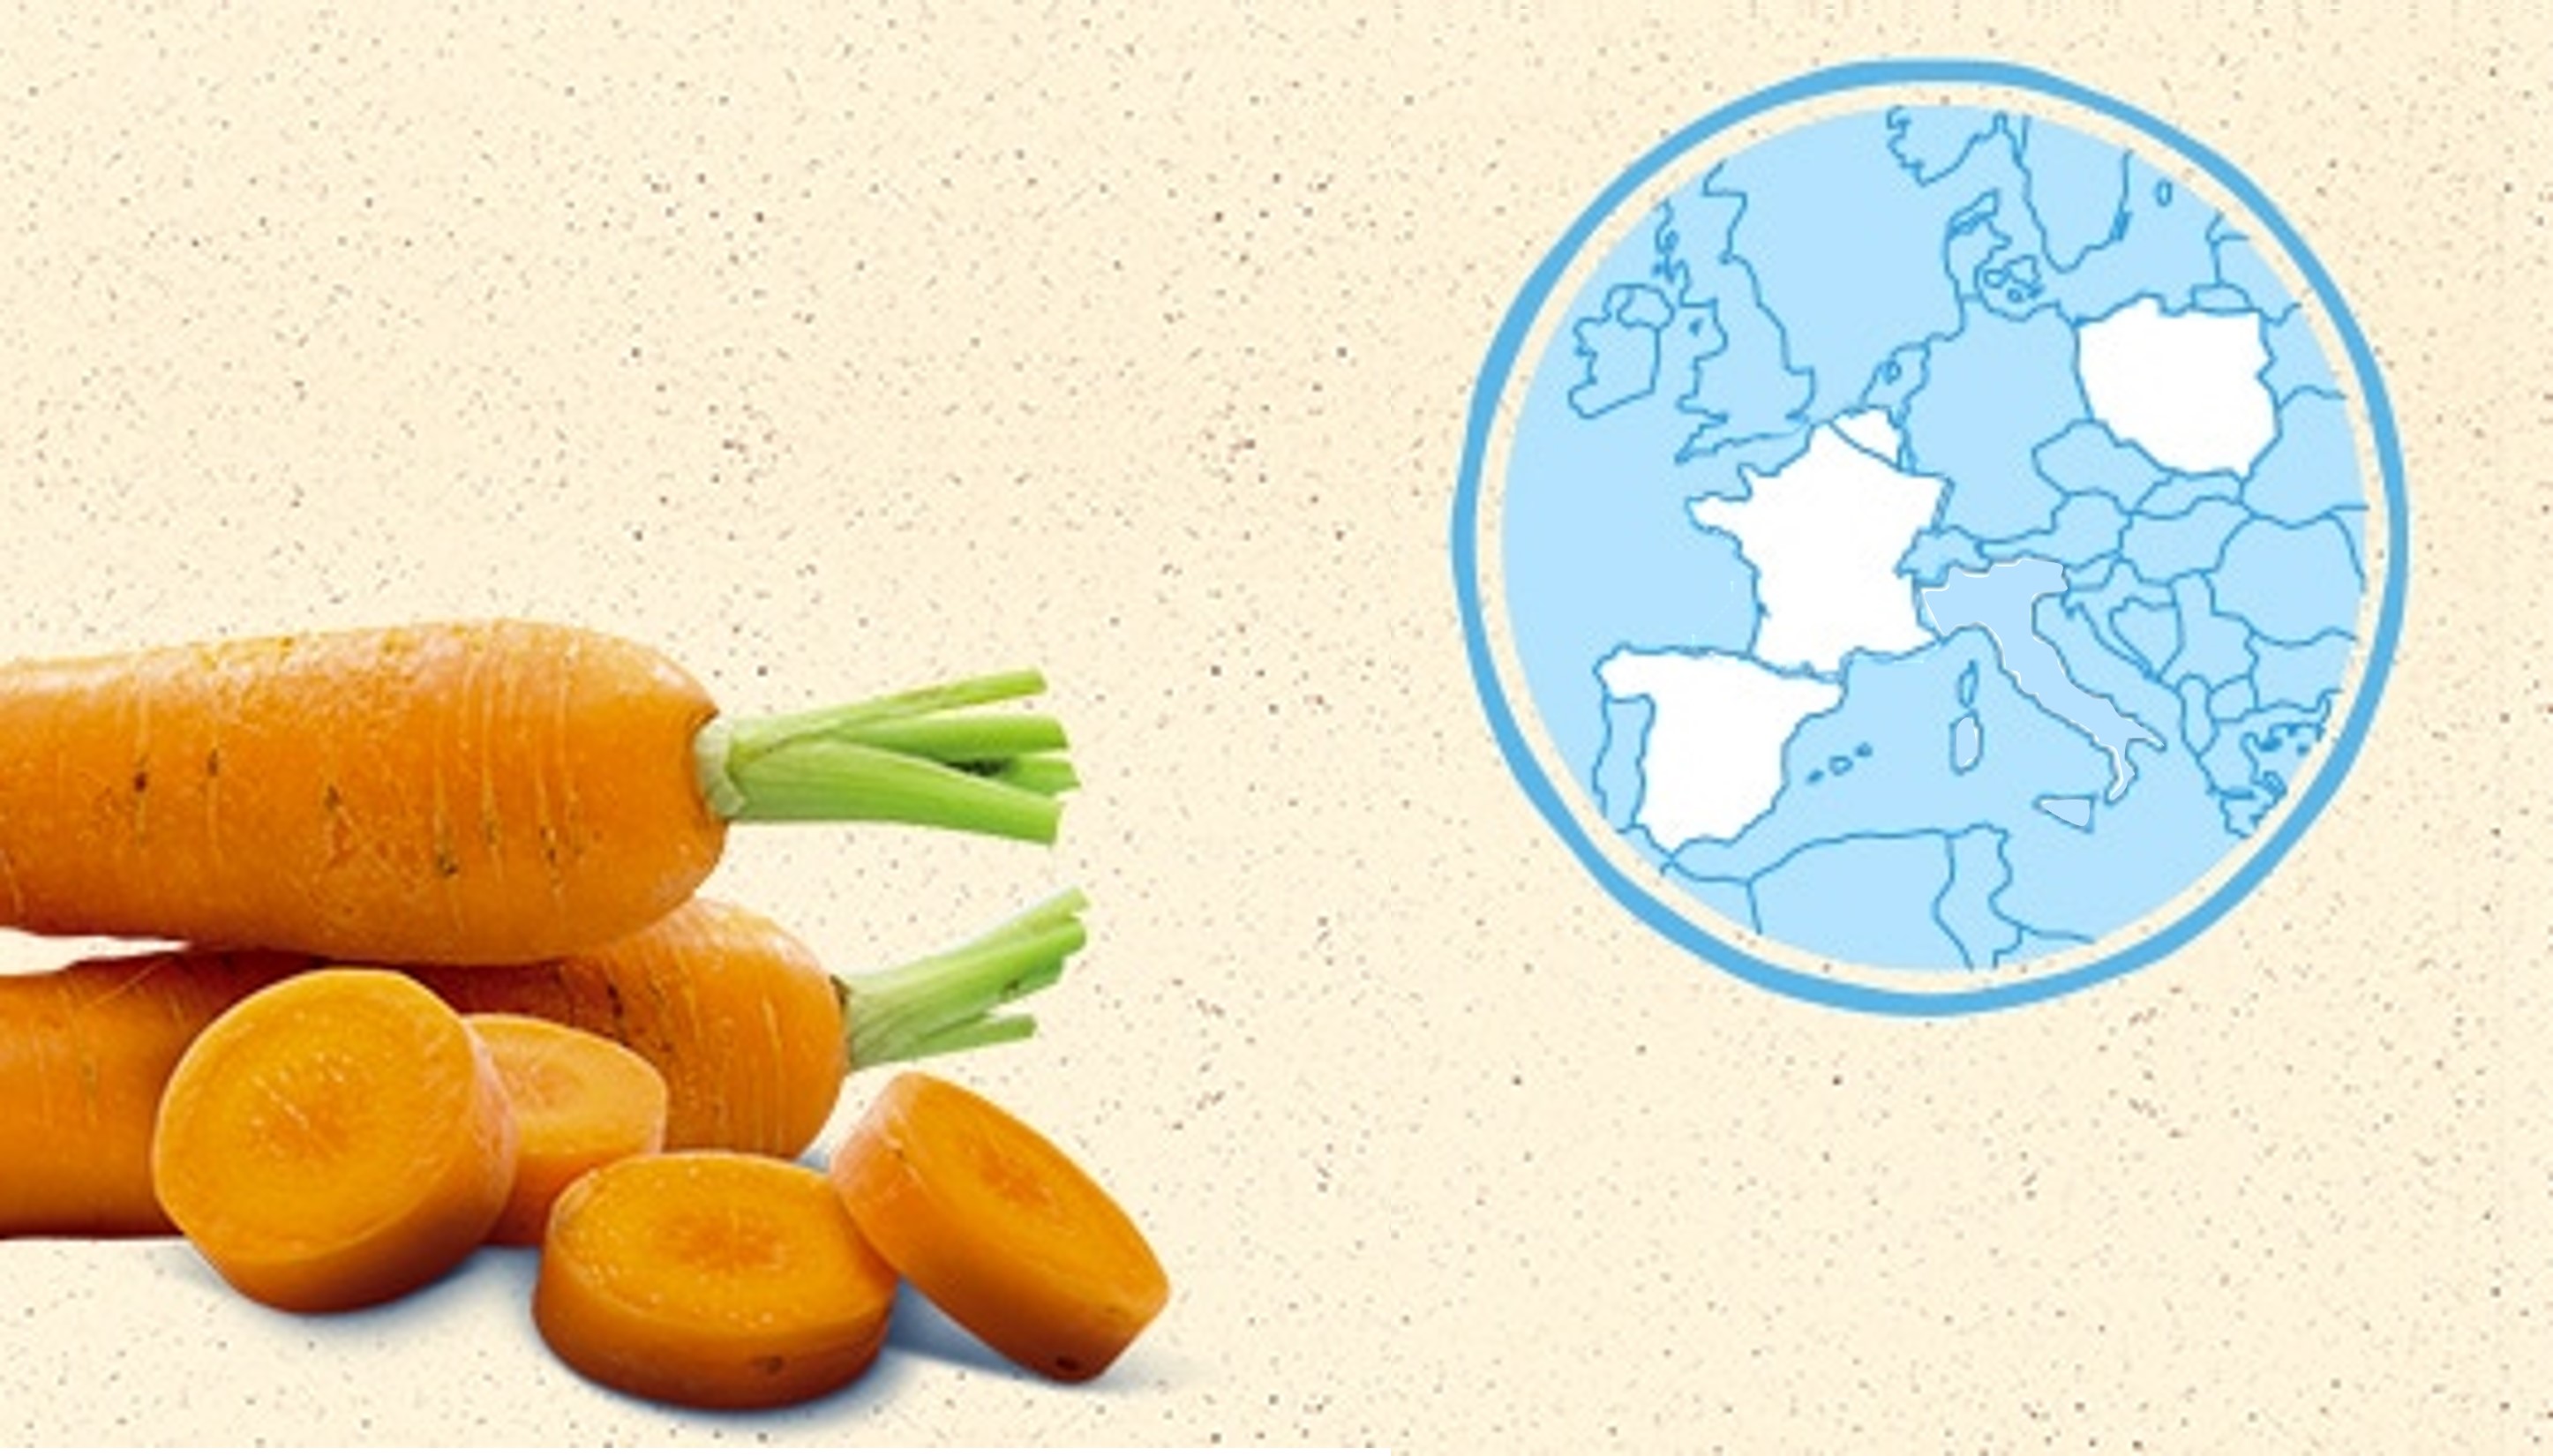 La carotte de France, de Belgique et d'Espagne et Pologne